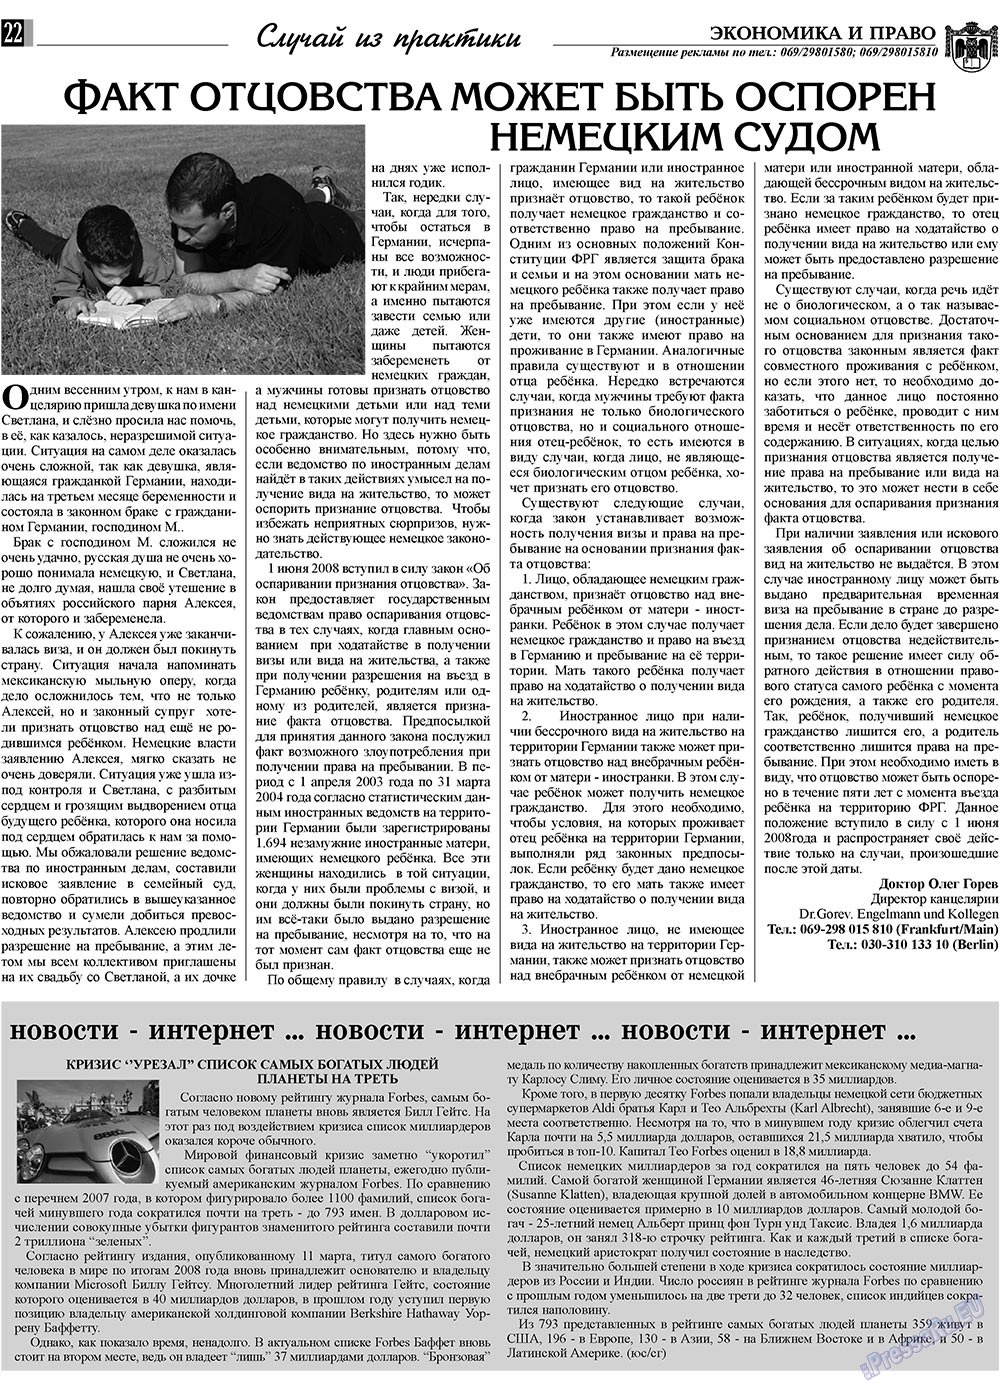 Экономика и право, газета. 2009 №4 стр.22